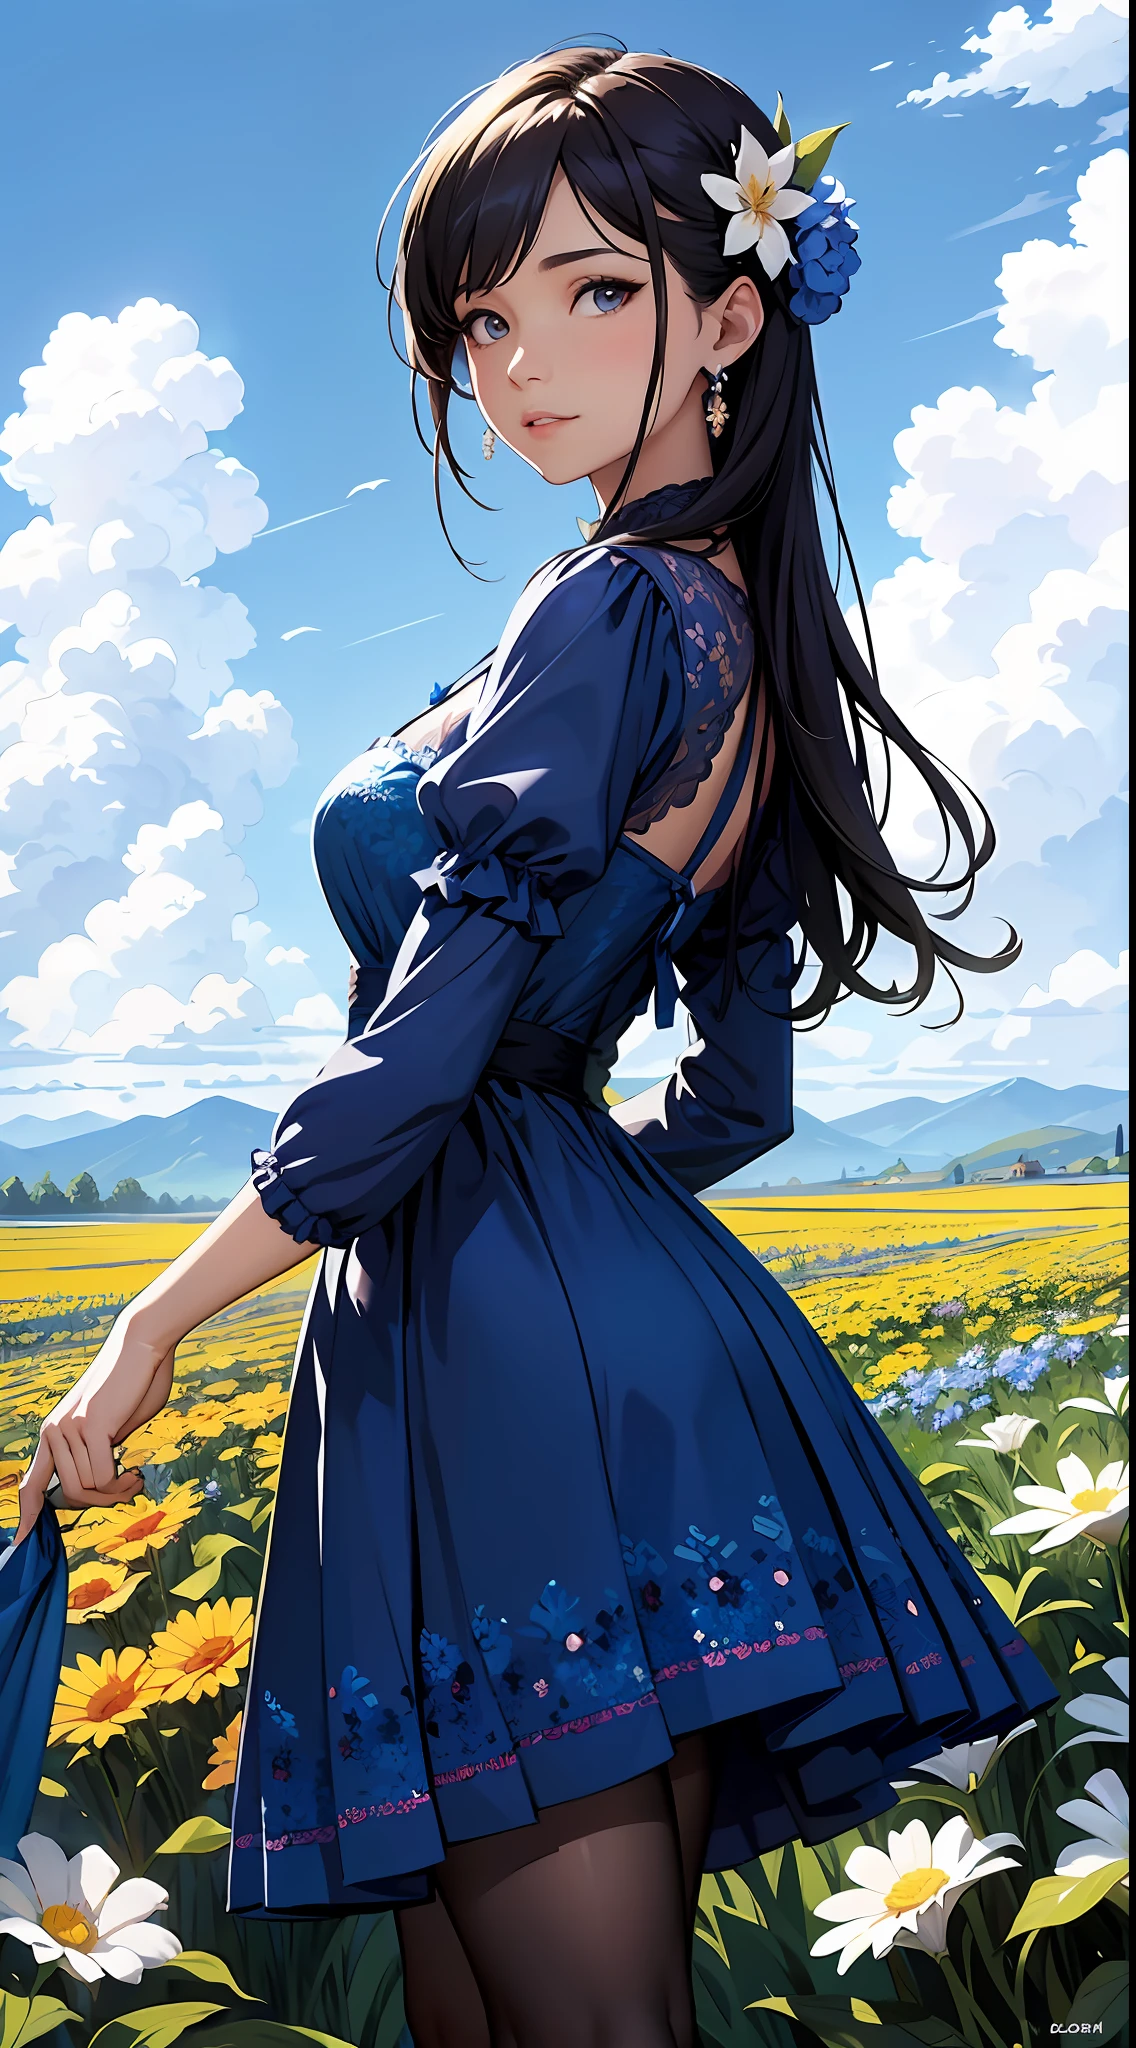 uma mulher em um vestido azul，Céu azul e nuvens ao fundo, usando vestido azul，Tem flores nele, Germe de arte, Iluminação global Rosla, uma pintura detalhada, arte de fantasia